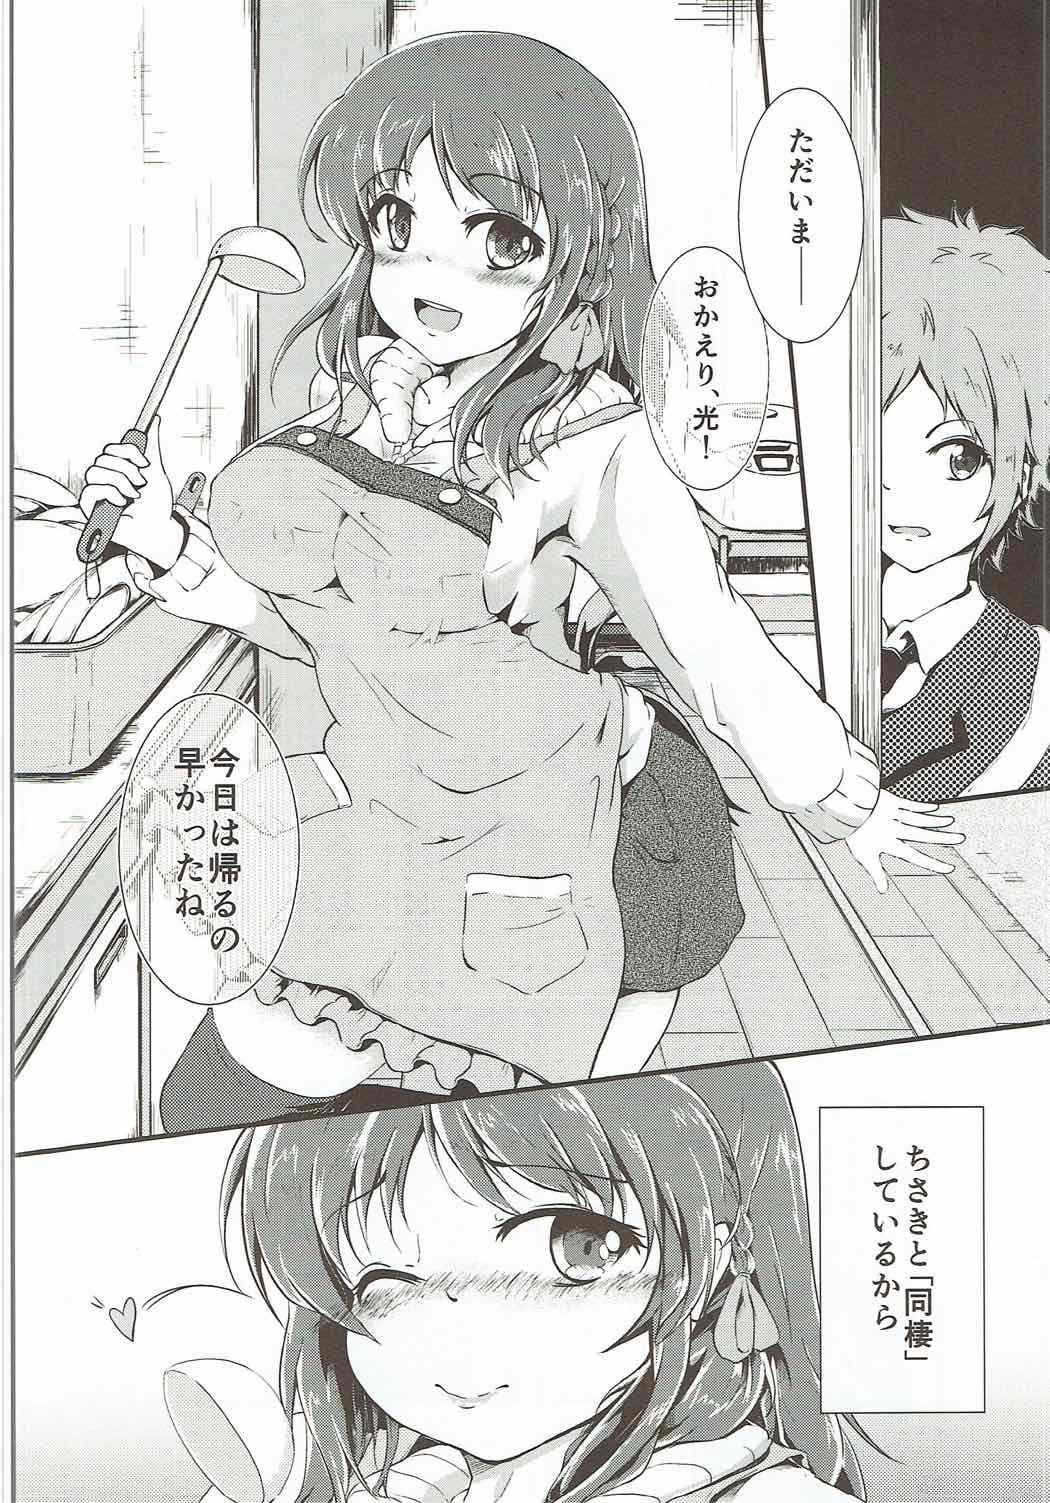 Slapping Chisaki to Issho - Nagi no asukara Belly - Page 3